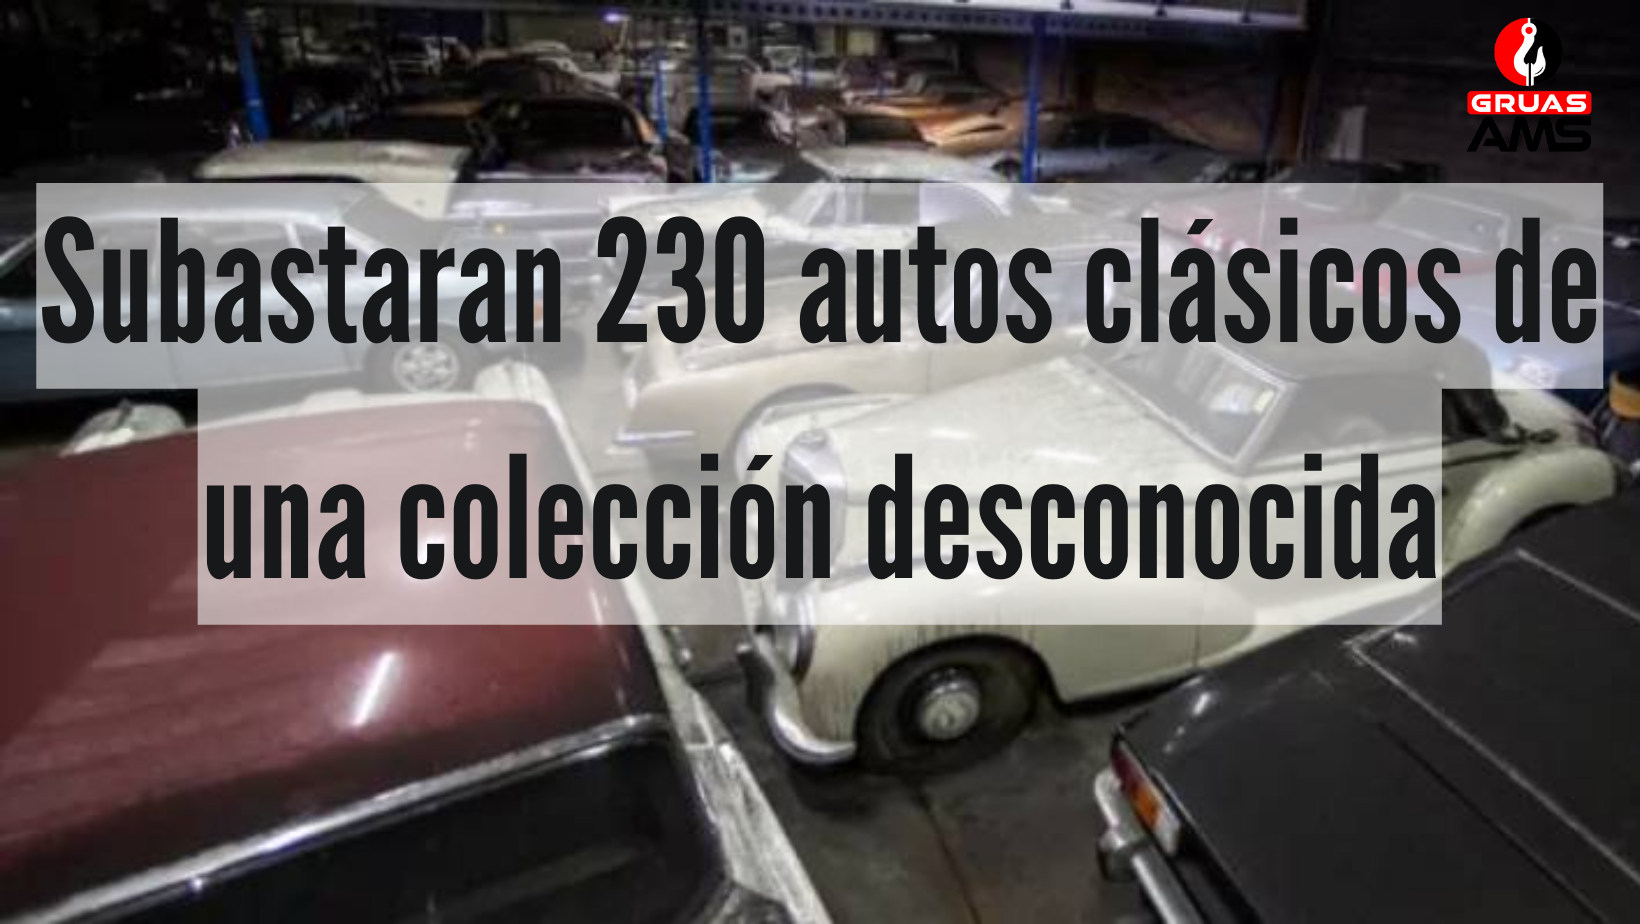 Subastaran 230 vehículos de una colección desconocida